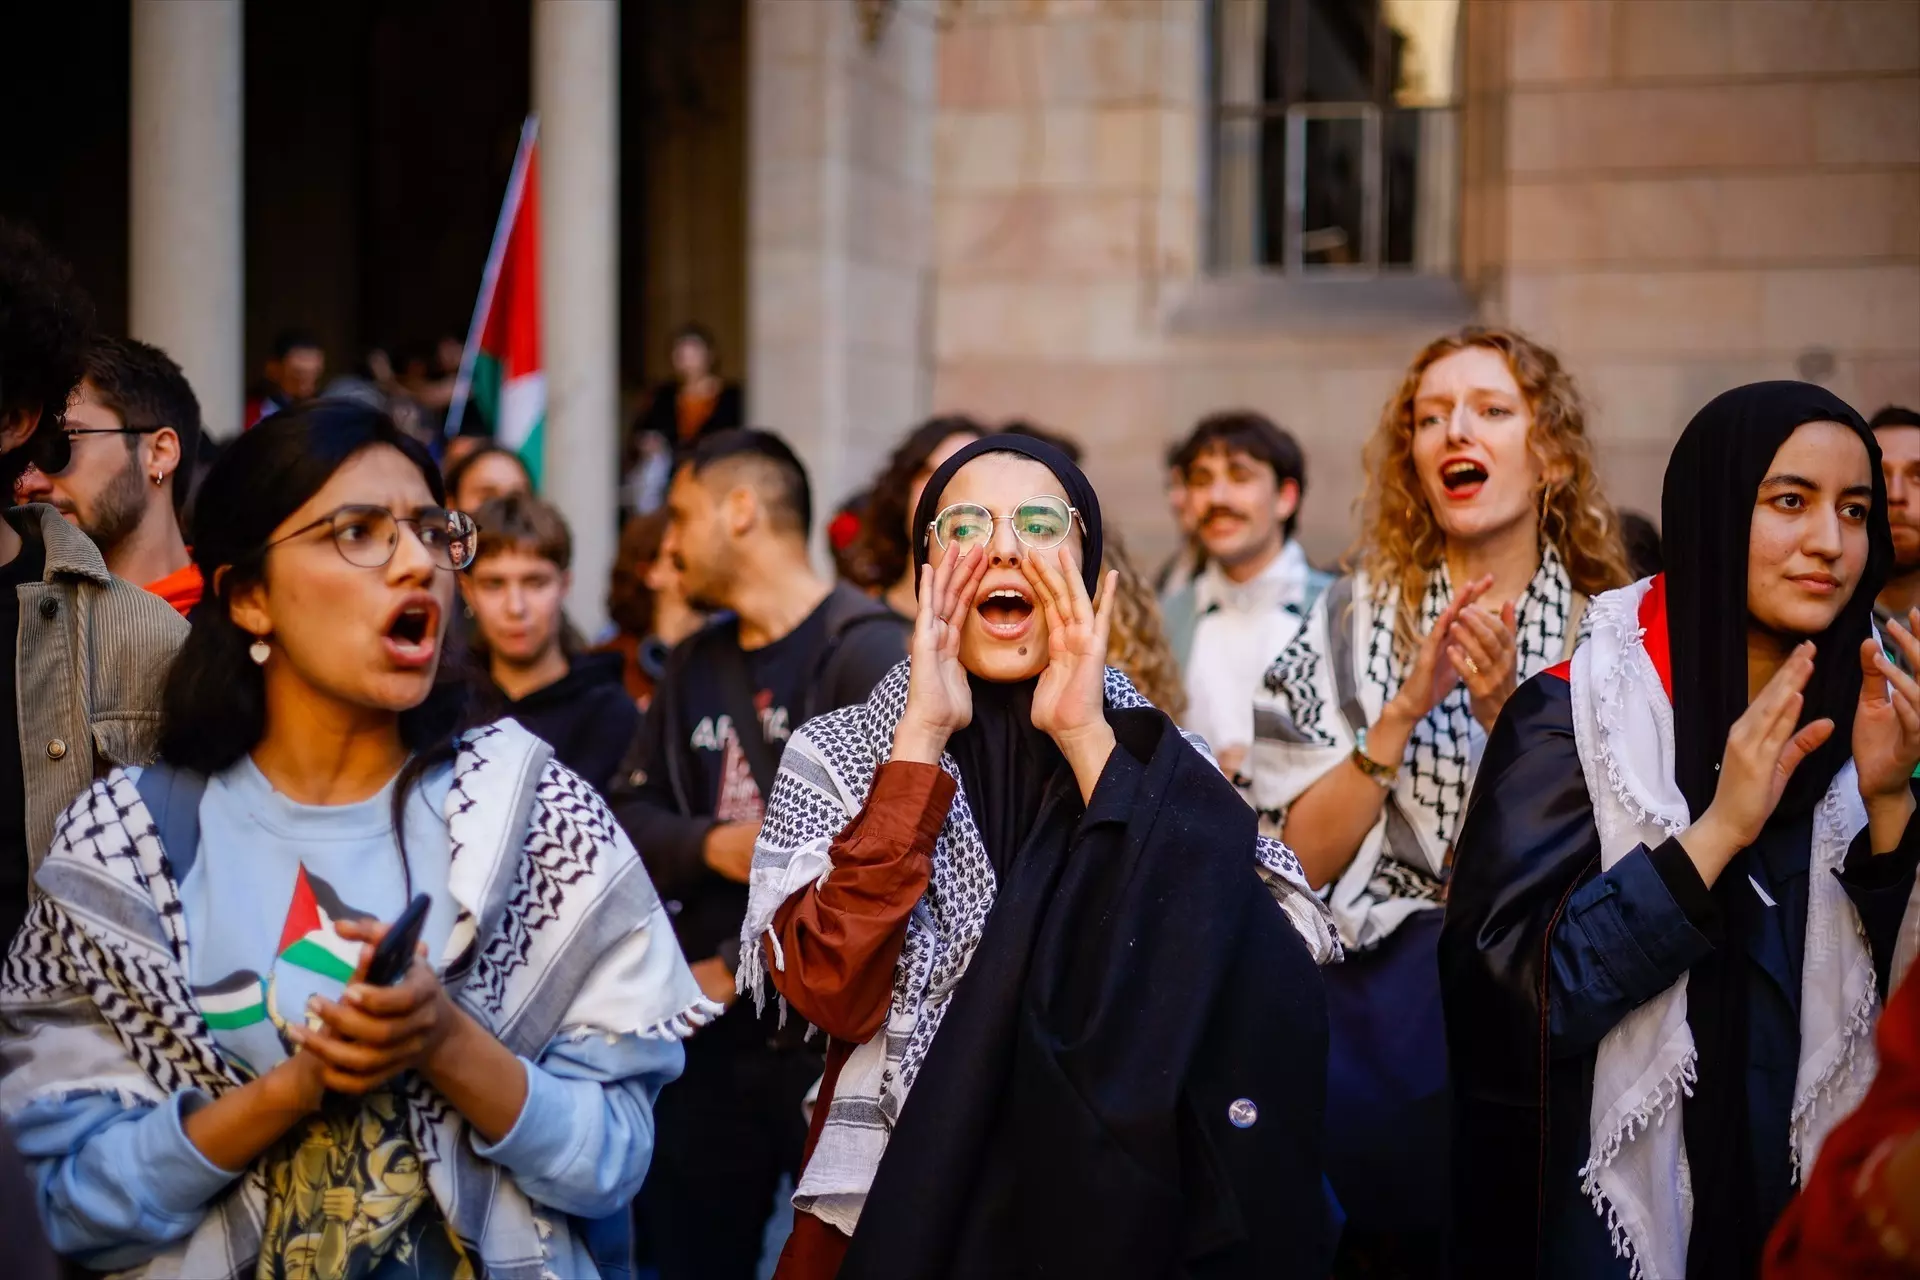 Estudiantes protestan contra el genocidio de Israel en Gaza en la Universitat de Barcelona. — Kike Rincón / Europa Press